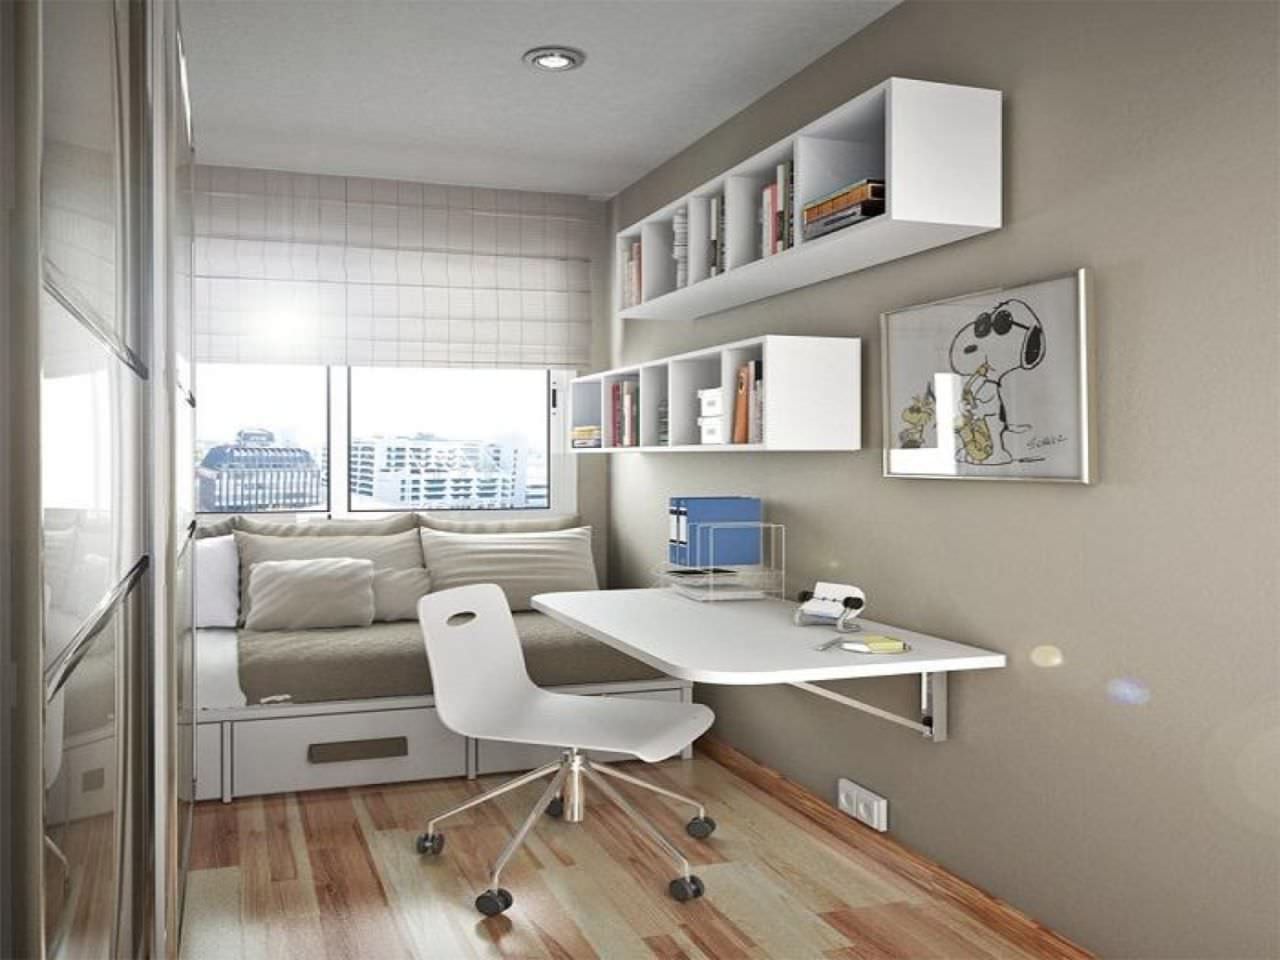 Thiết kế phòng ngủ hình chữ nhật cho bé dễ thương, tiết kiệm diện tích với nội thất thông minh như giường kéo, bàn treo tường